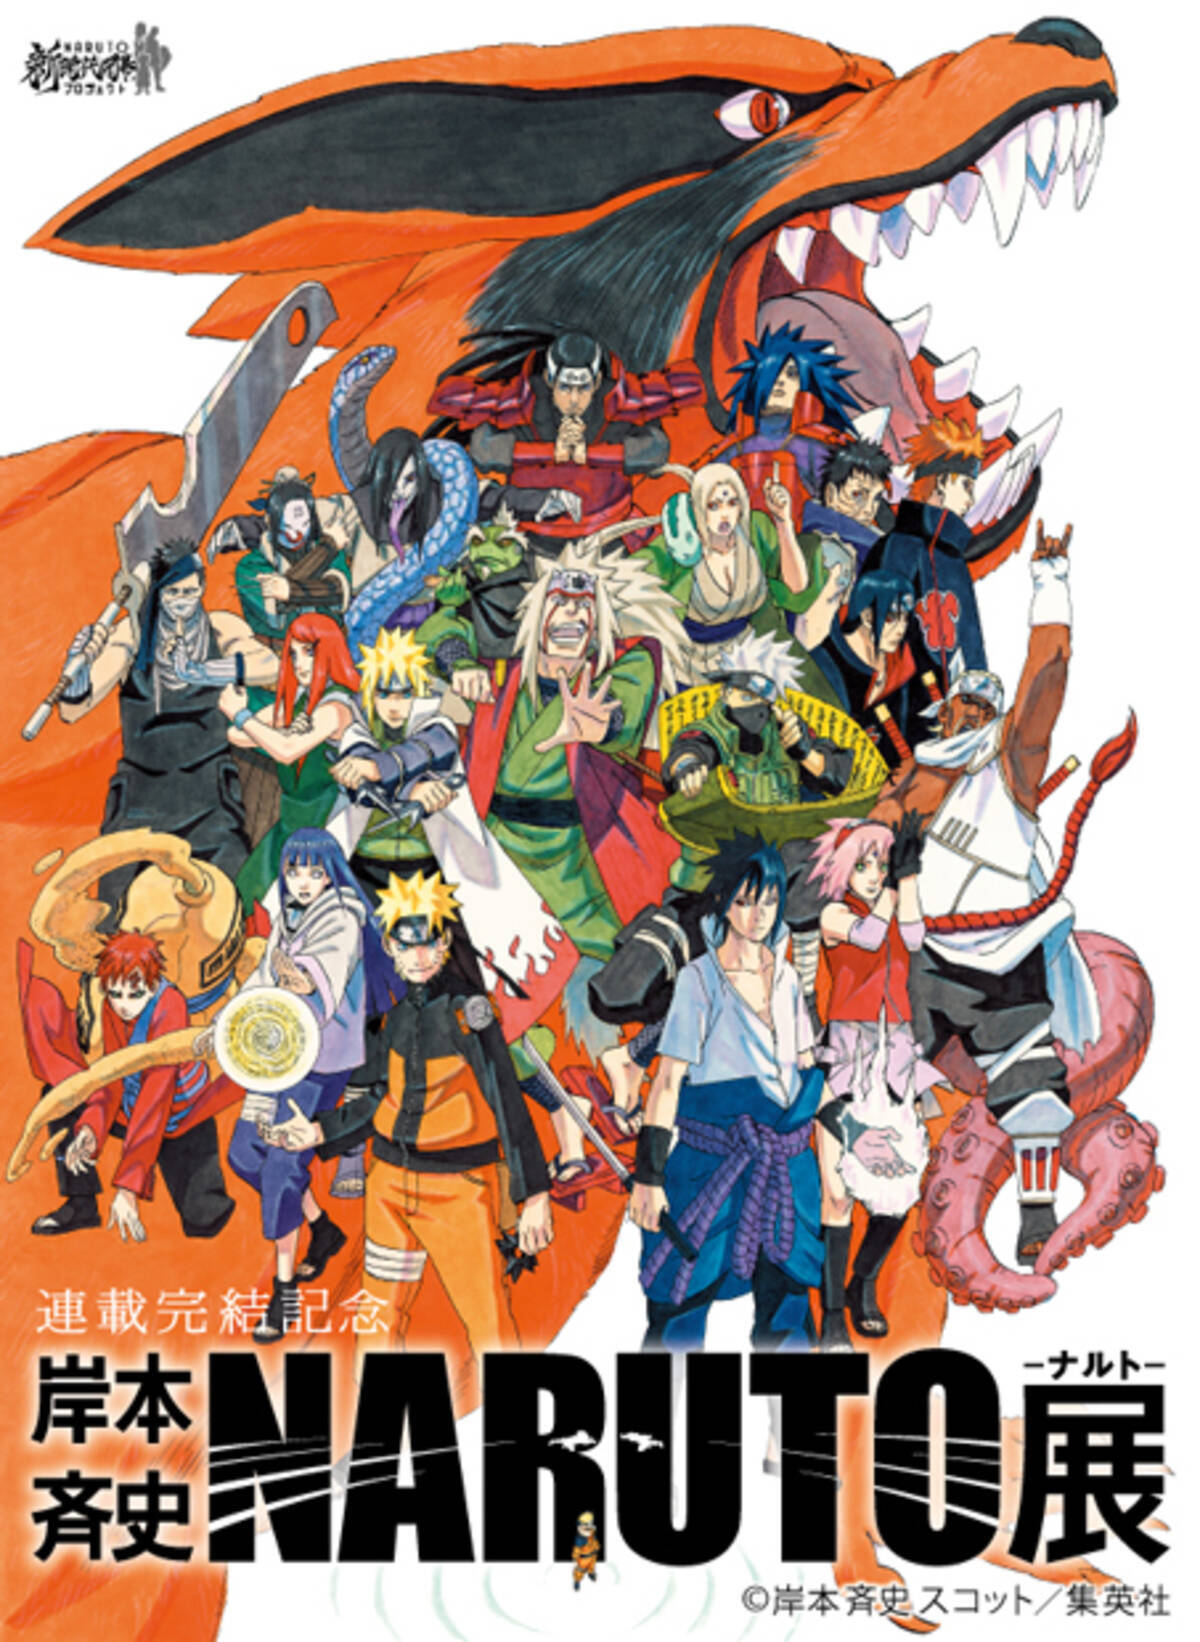 Naruto歴代キャラ集合イラスト公開 Naruto展 公式サイト本格始動 14年12月22日 エキサイトニュース